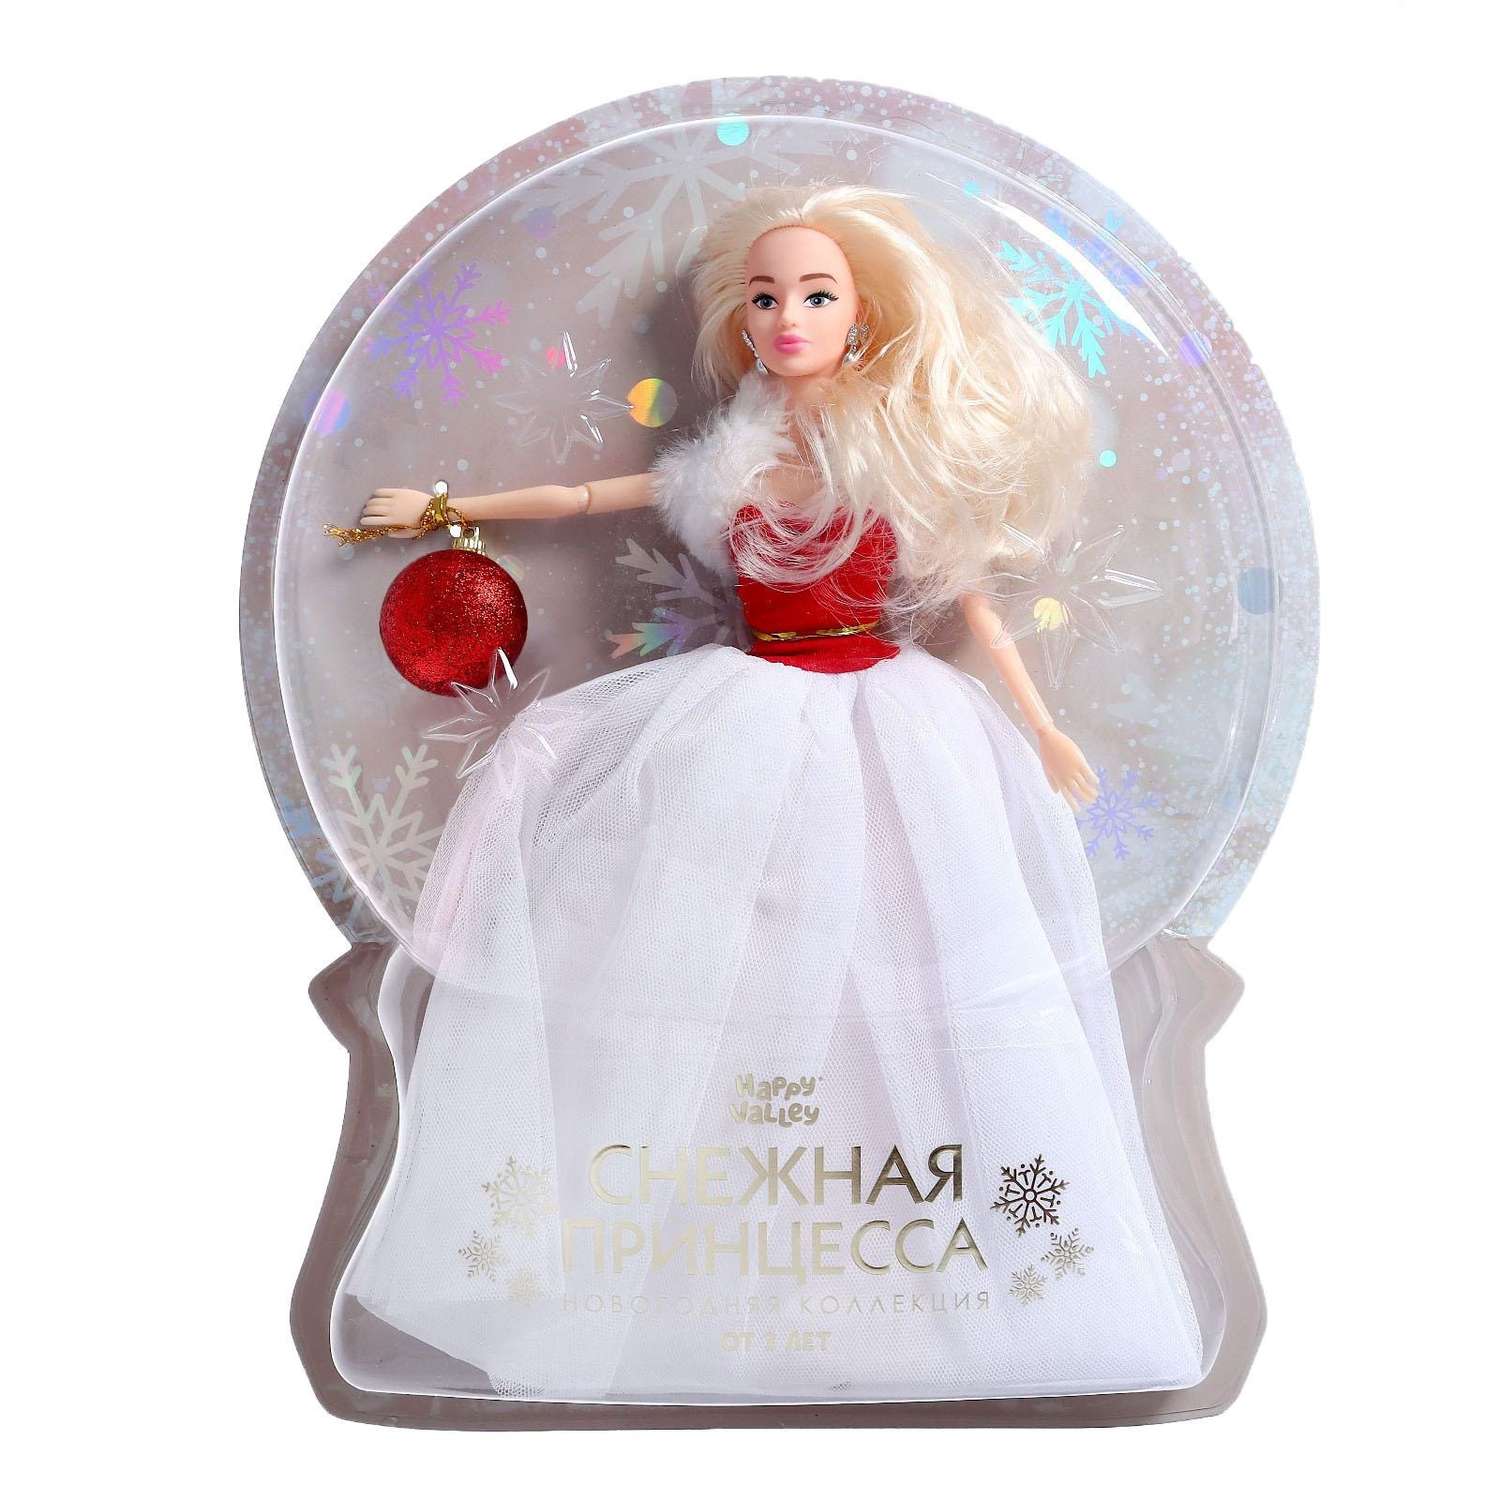 Кукла модель шарнирная Happy Valley «Снежная принцесса Ксения» 6954244 - фото 1